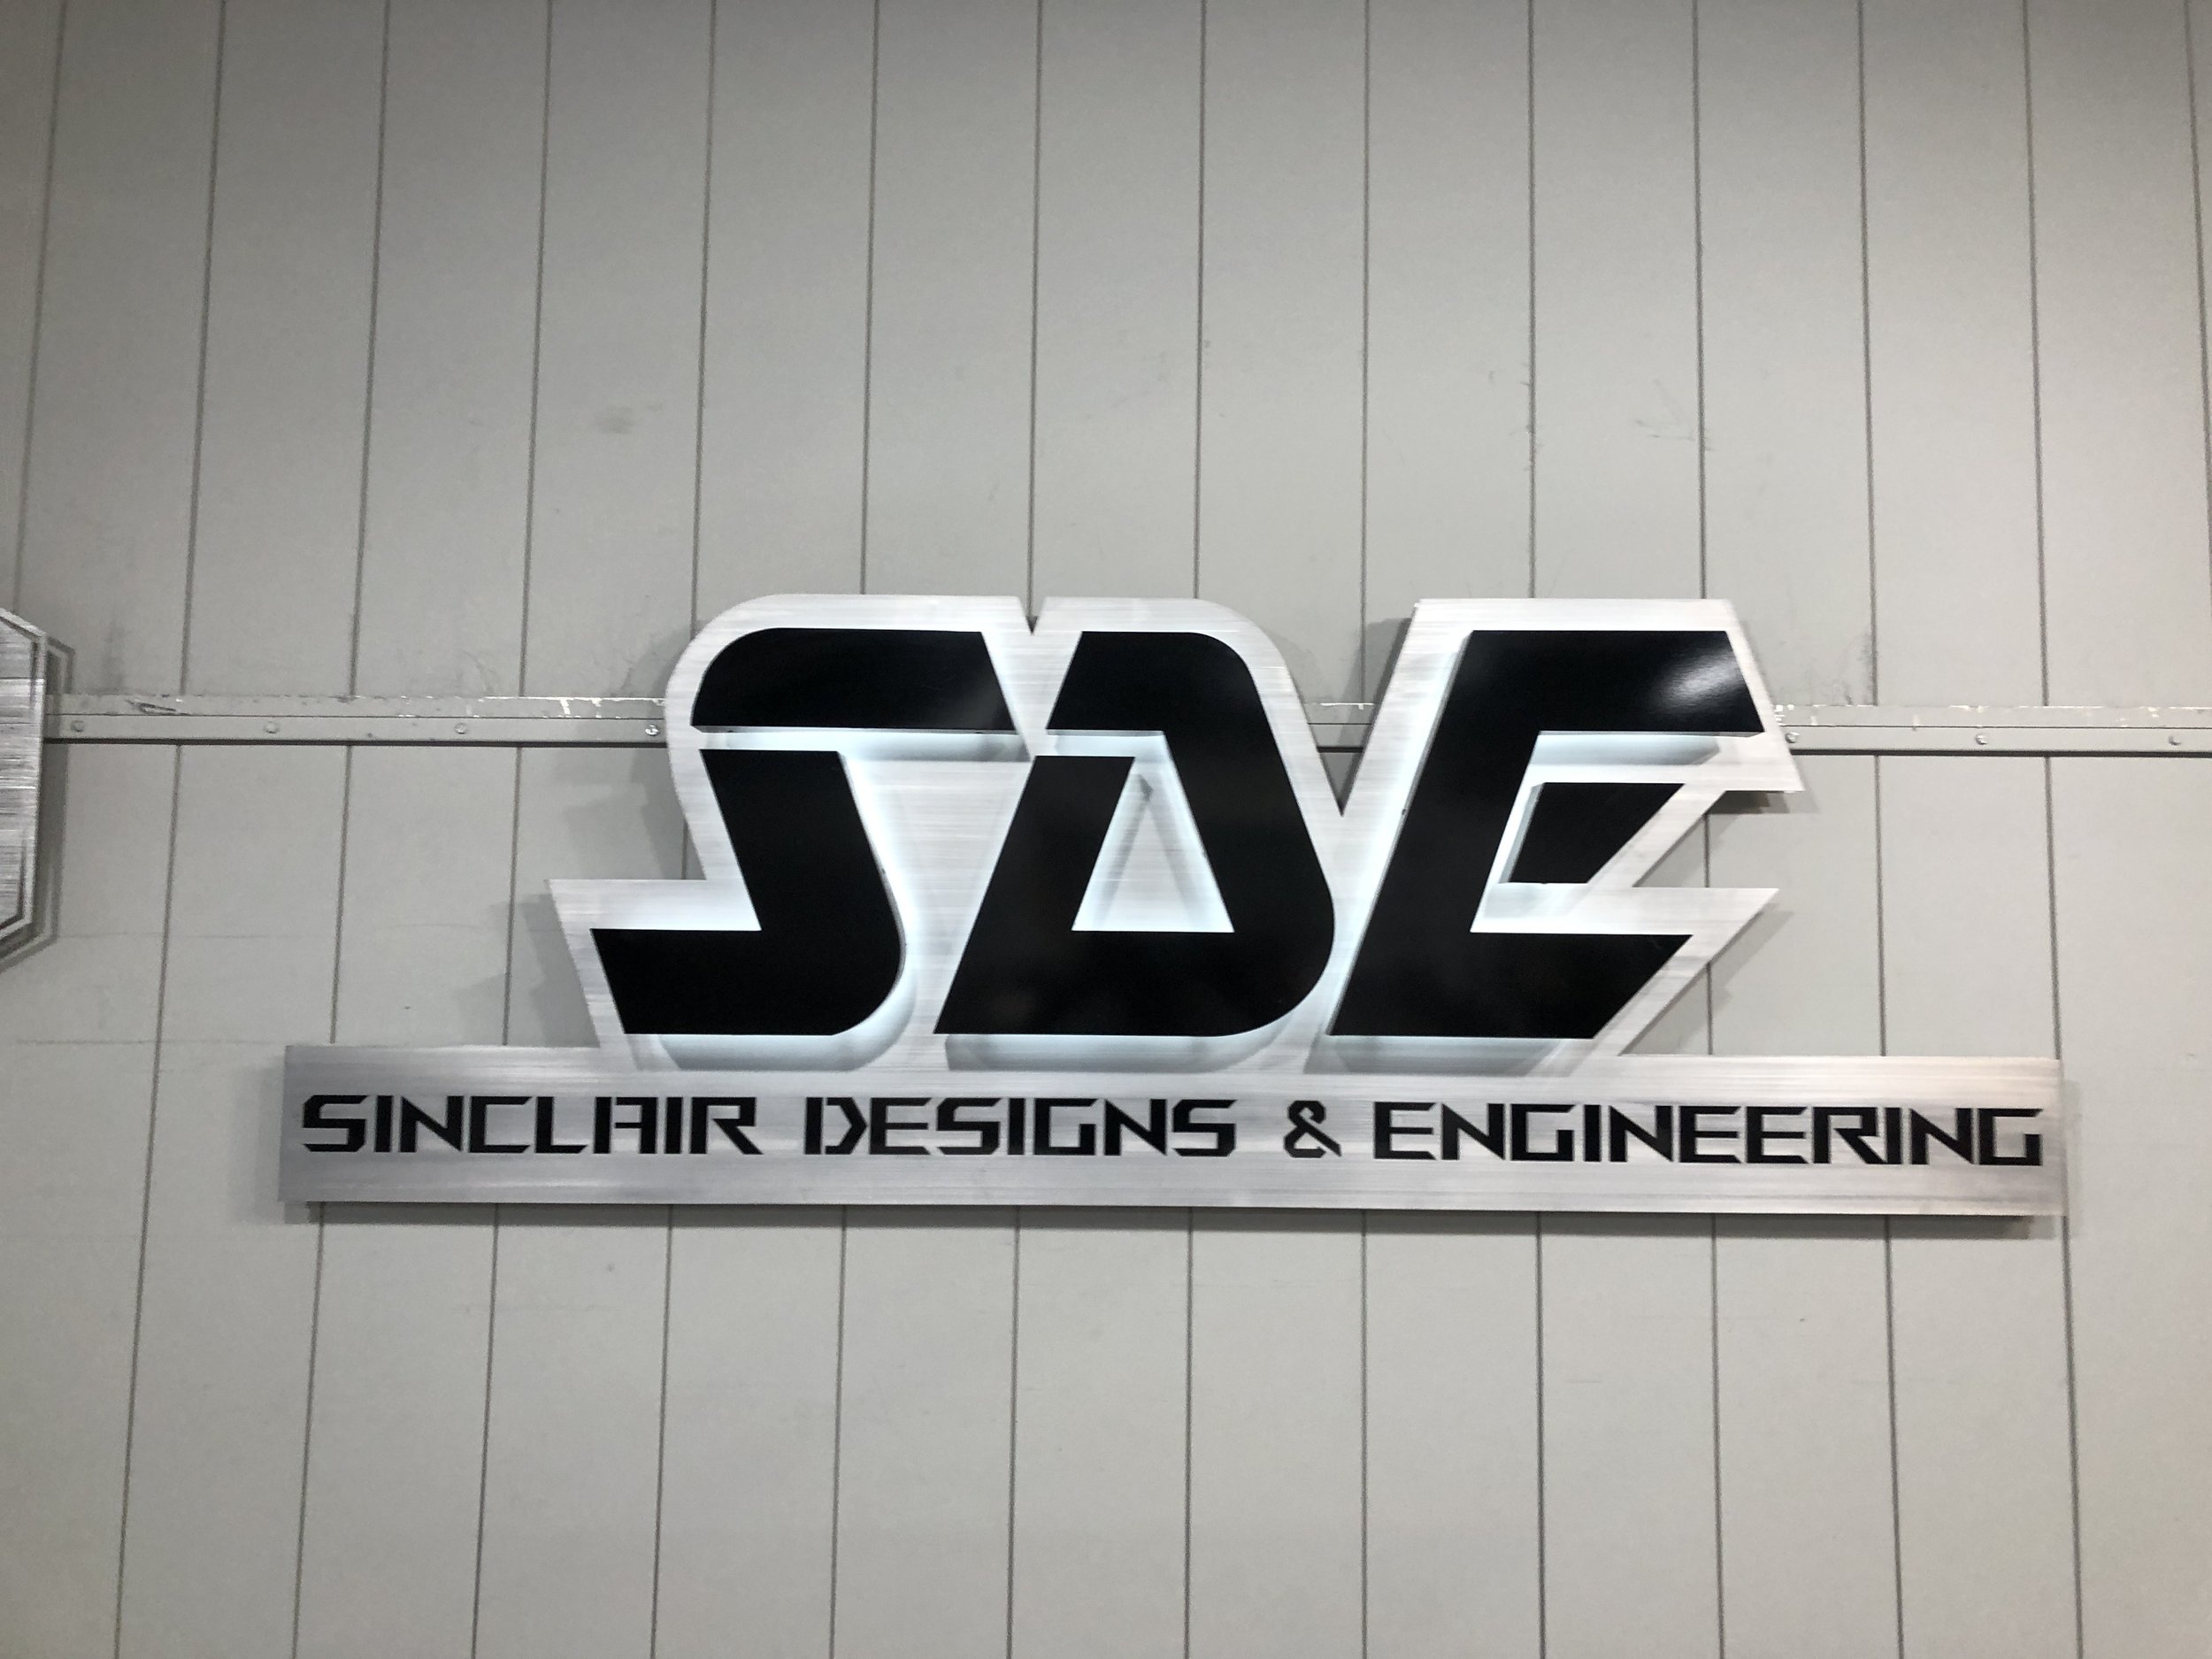 SDE Sinclair Engineering IMG_8107.JPG